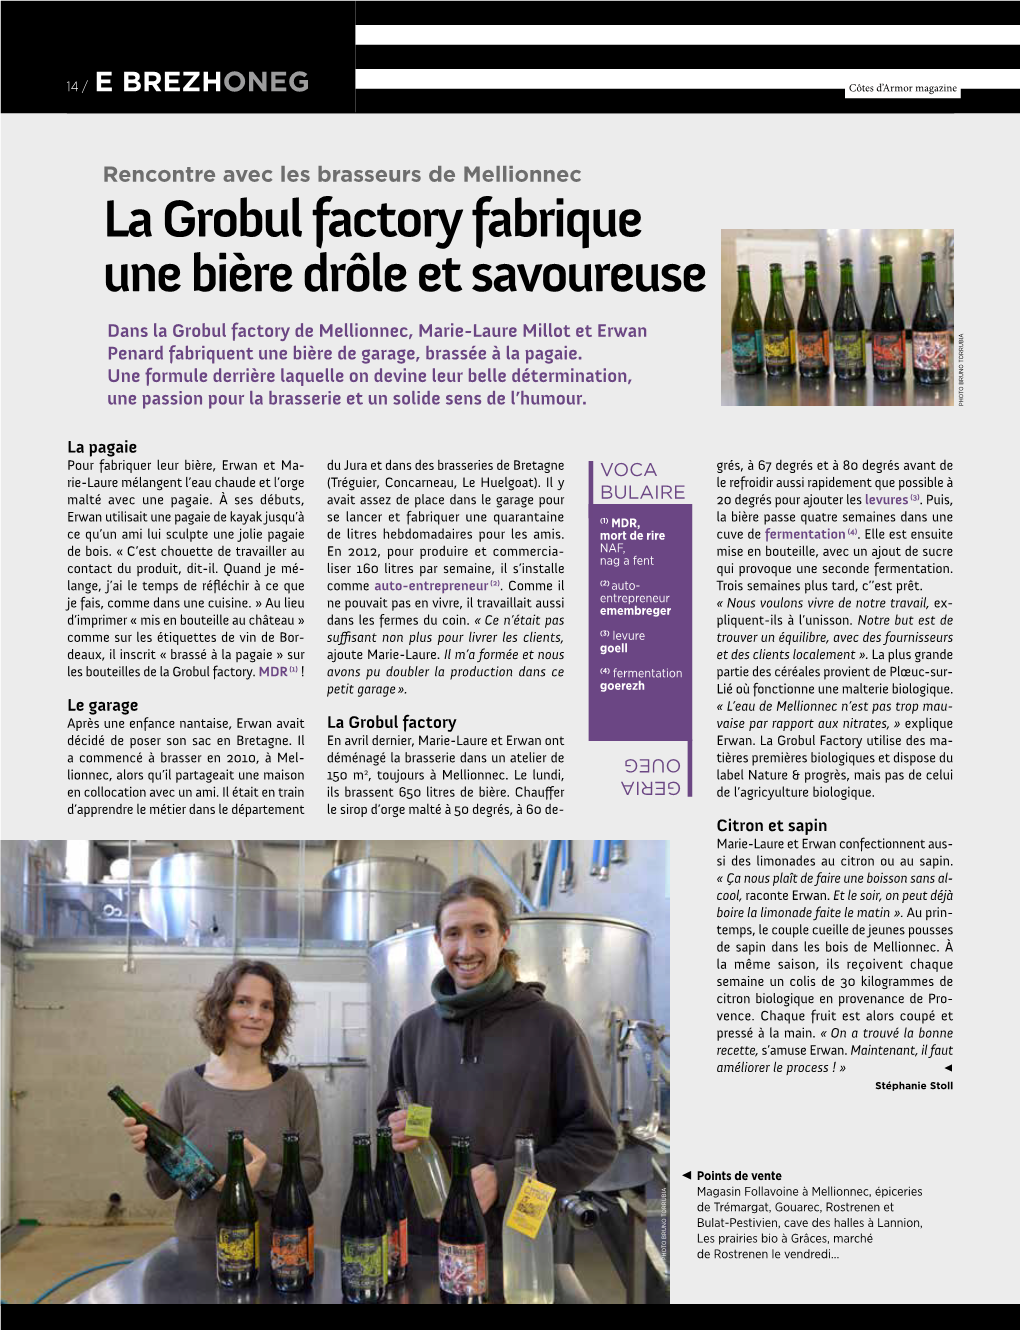 La Grobul Factory Fabrique Une Bière Drôle Et Savoureuse Dans La Grobul Factory De Mellionnec, Marie-Laure Millot Et Erwan U B I A